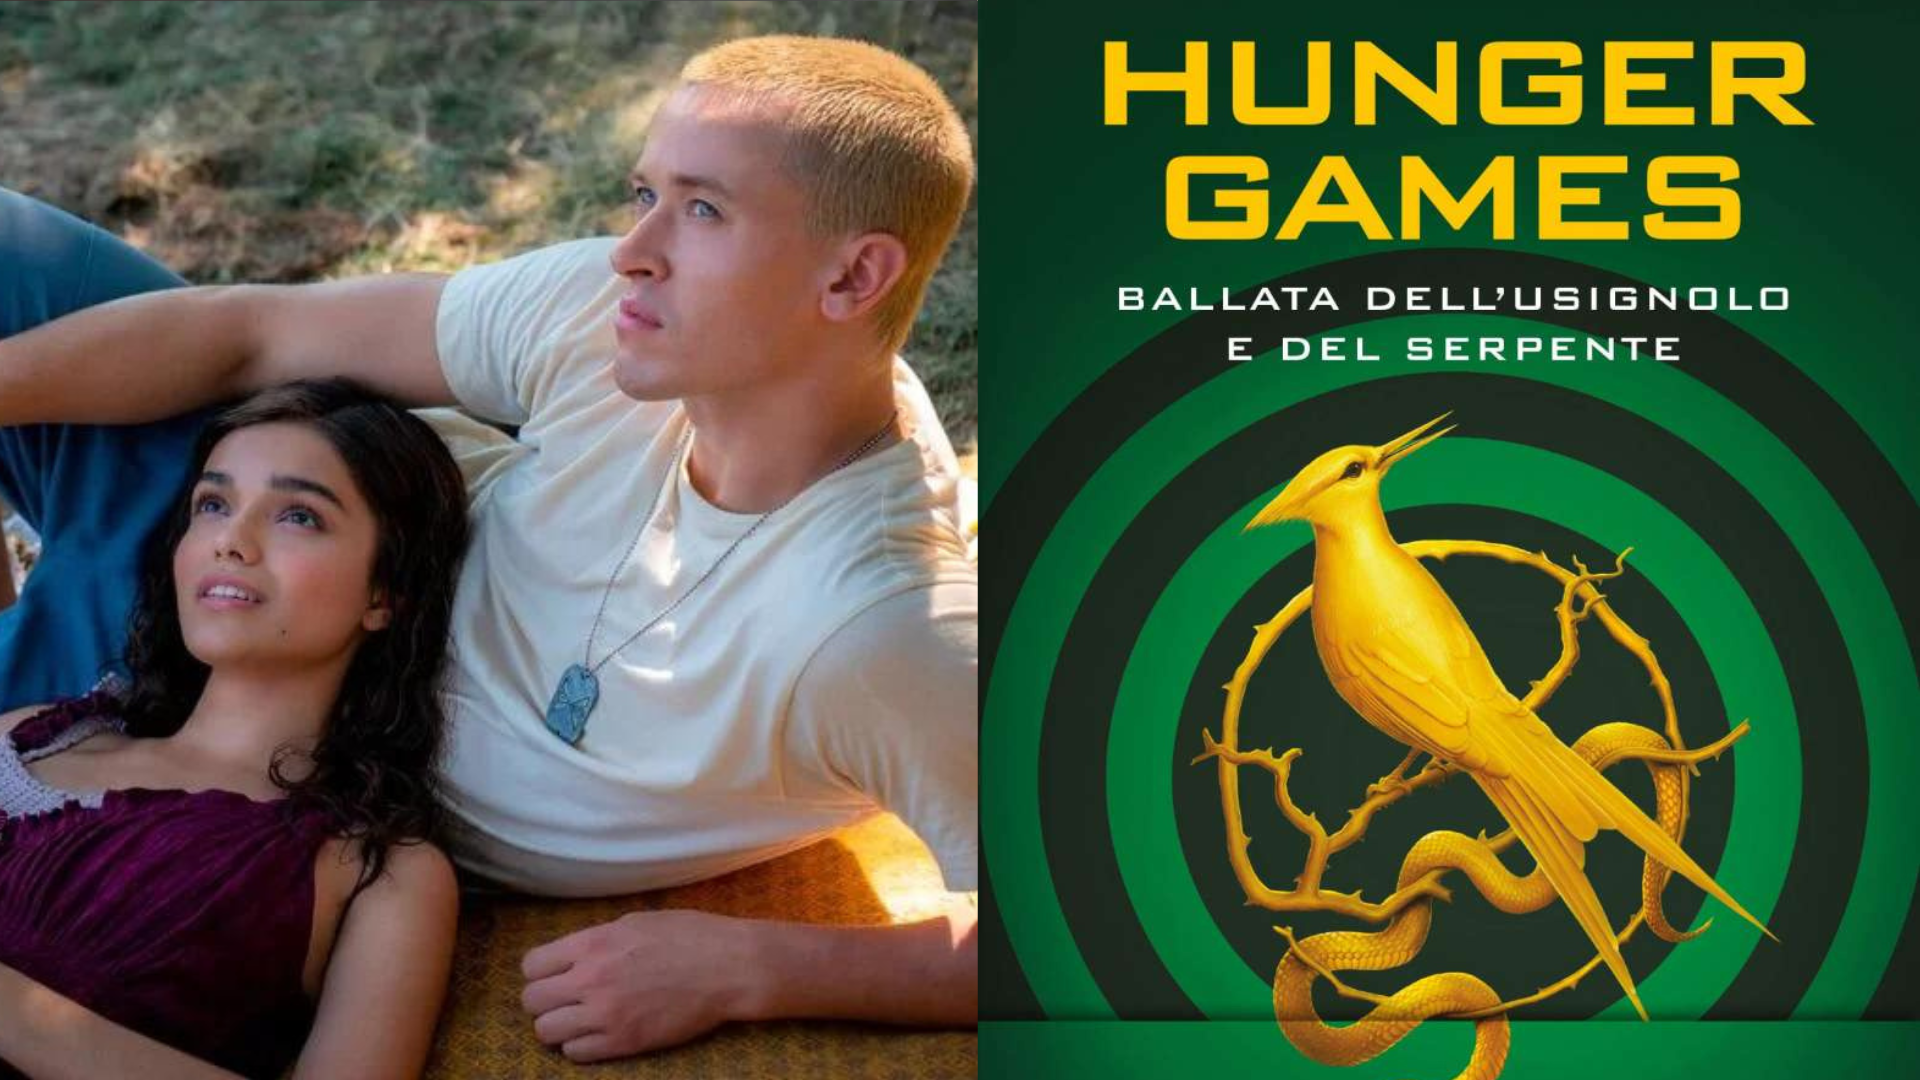 Hunger Games la ballata dell’usignolo e del serpete 